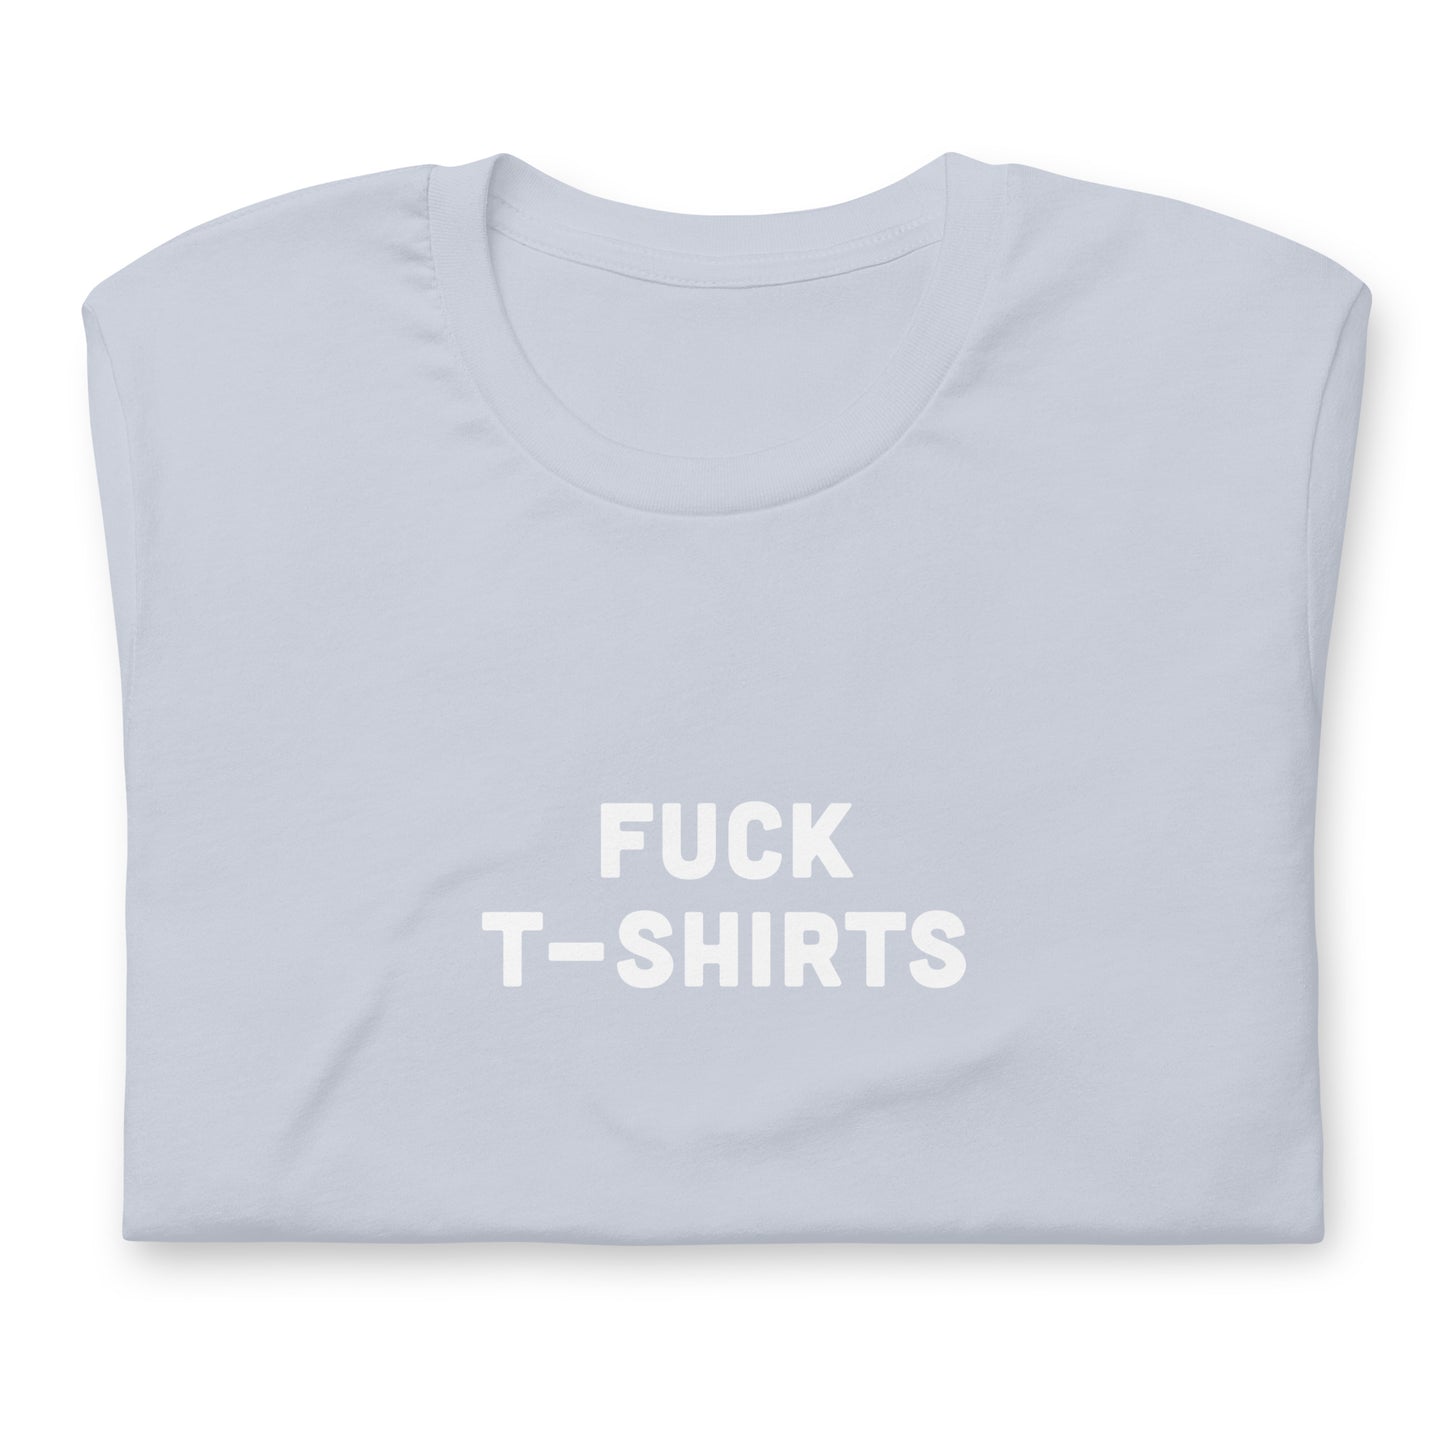 Fuck T-Shirts T-Shirt Size M Color Asphalt